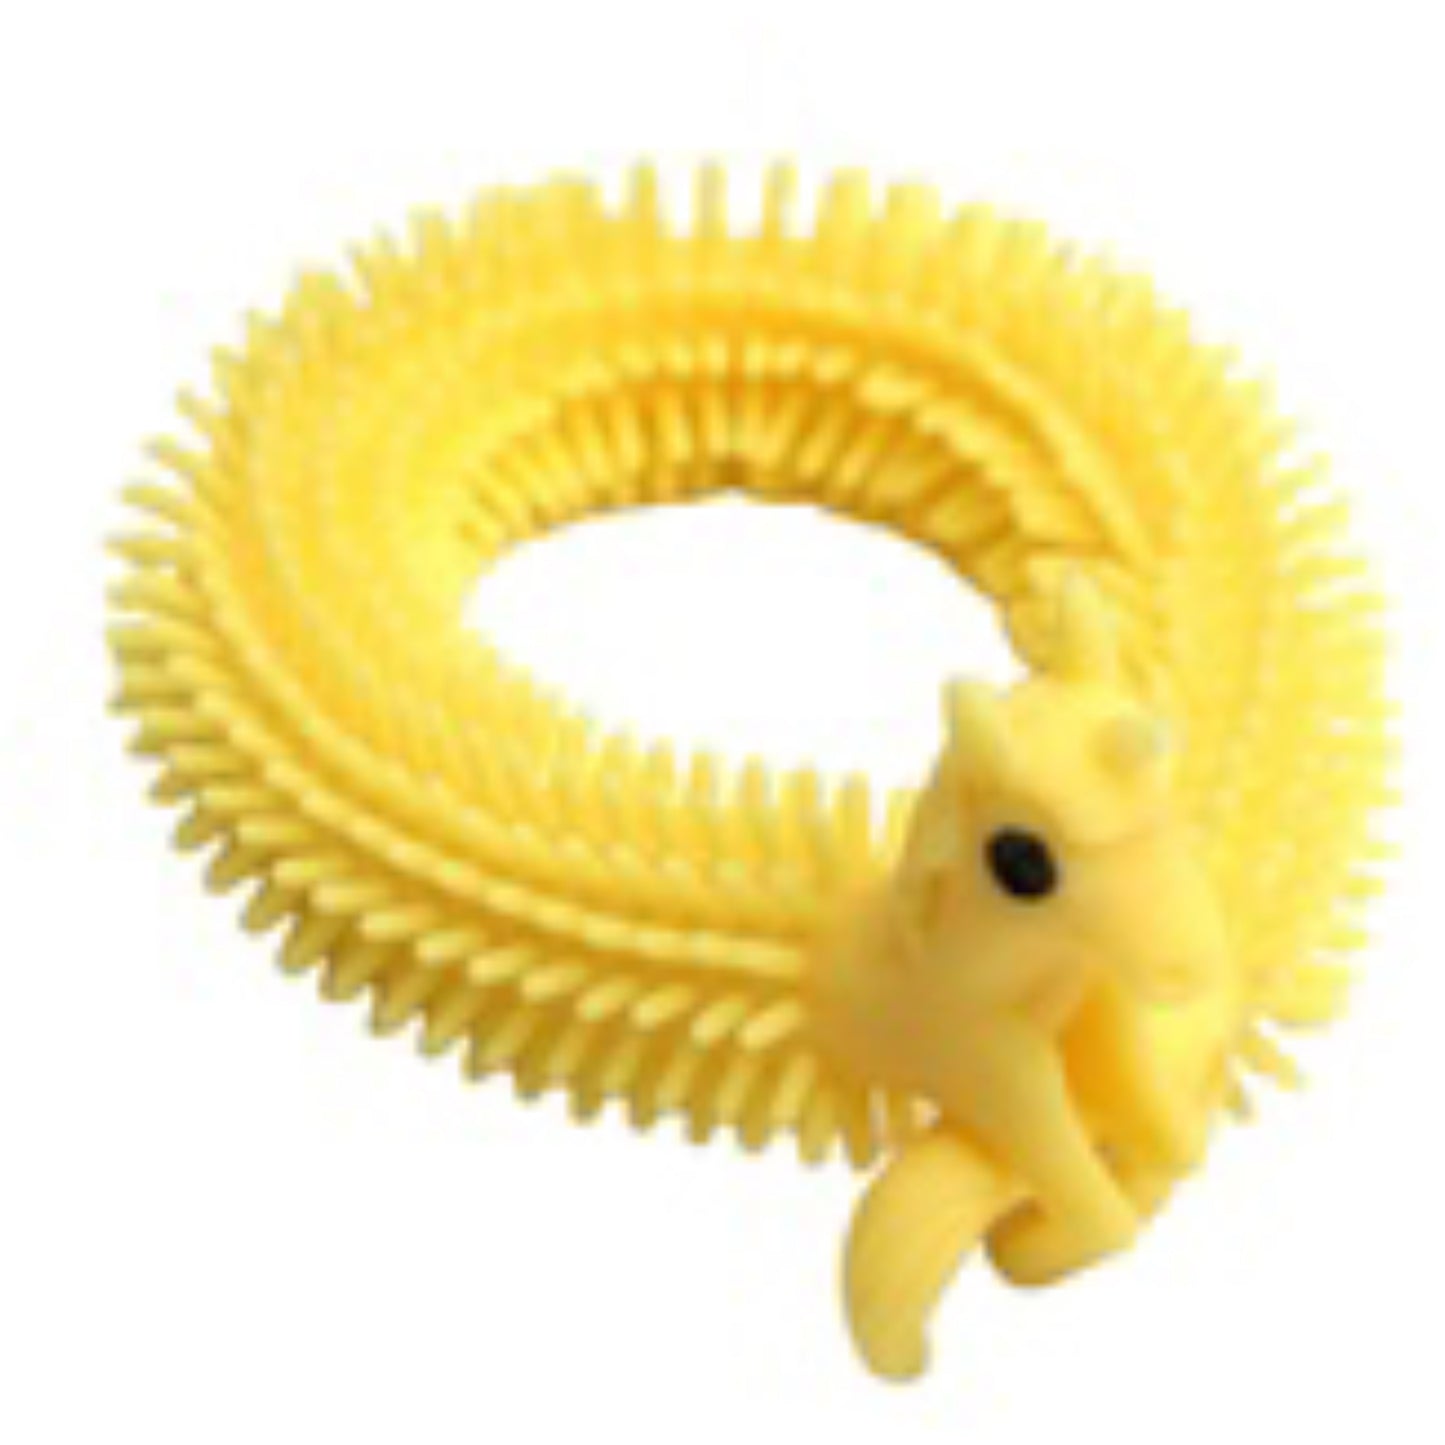 Unicorn Stretch String Fidget Toy